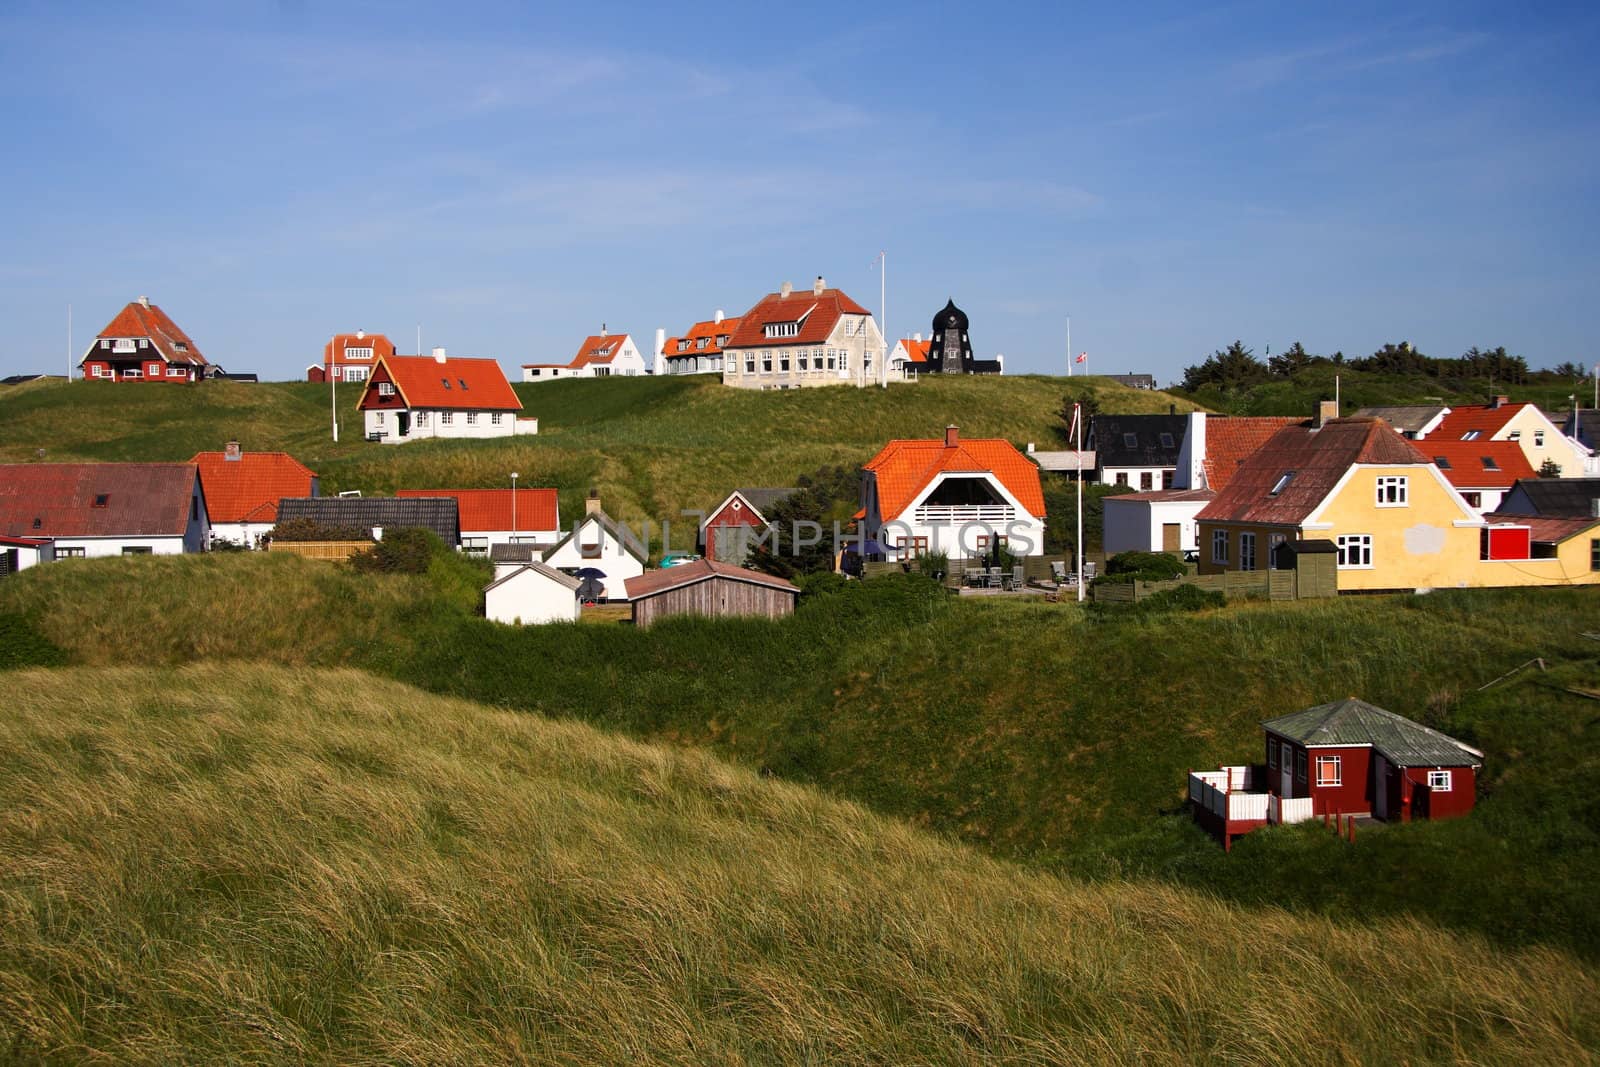 Houses in Denmark by Maridav